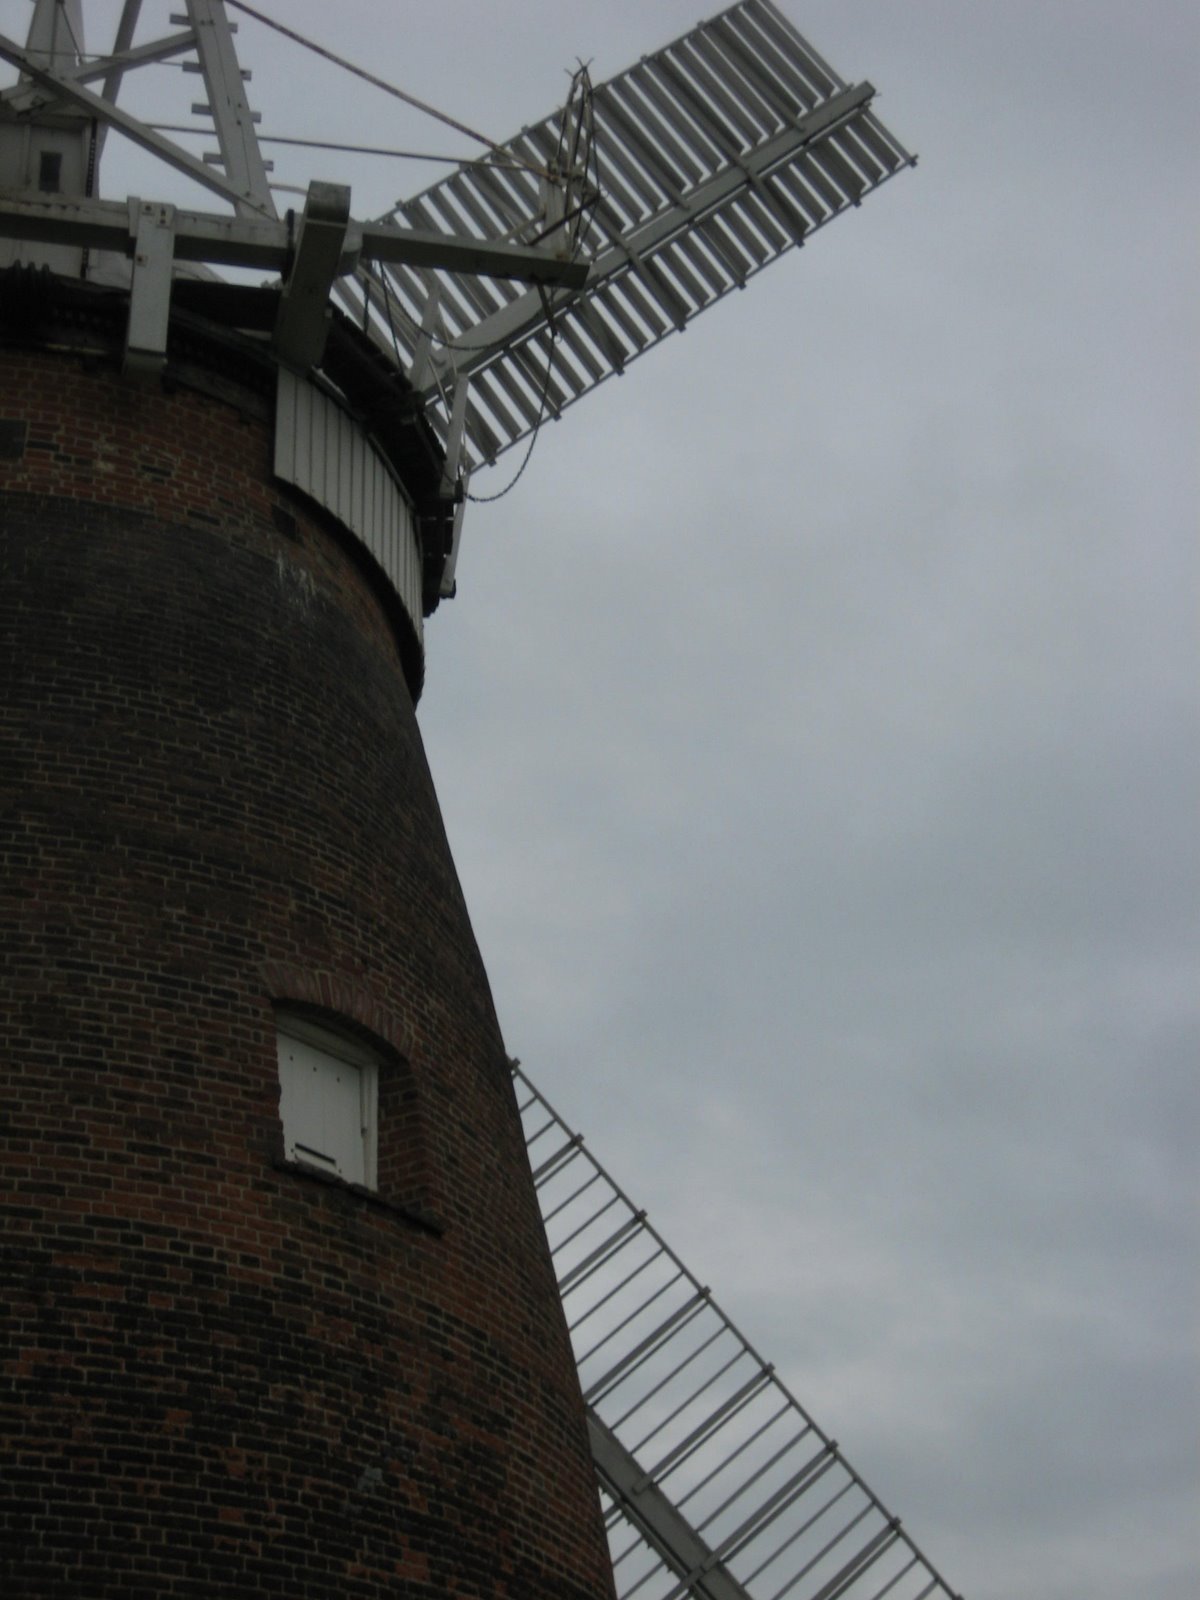 [Windmill.JPG]